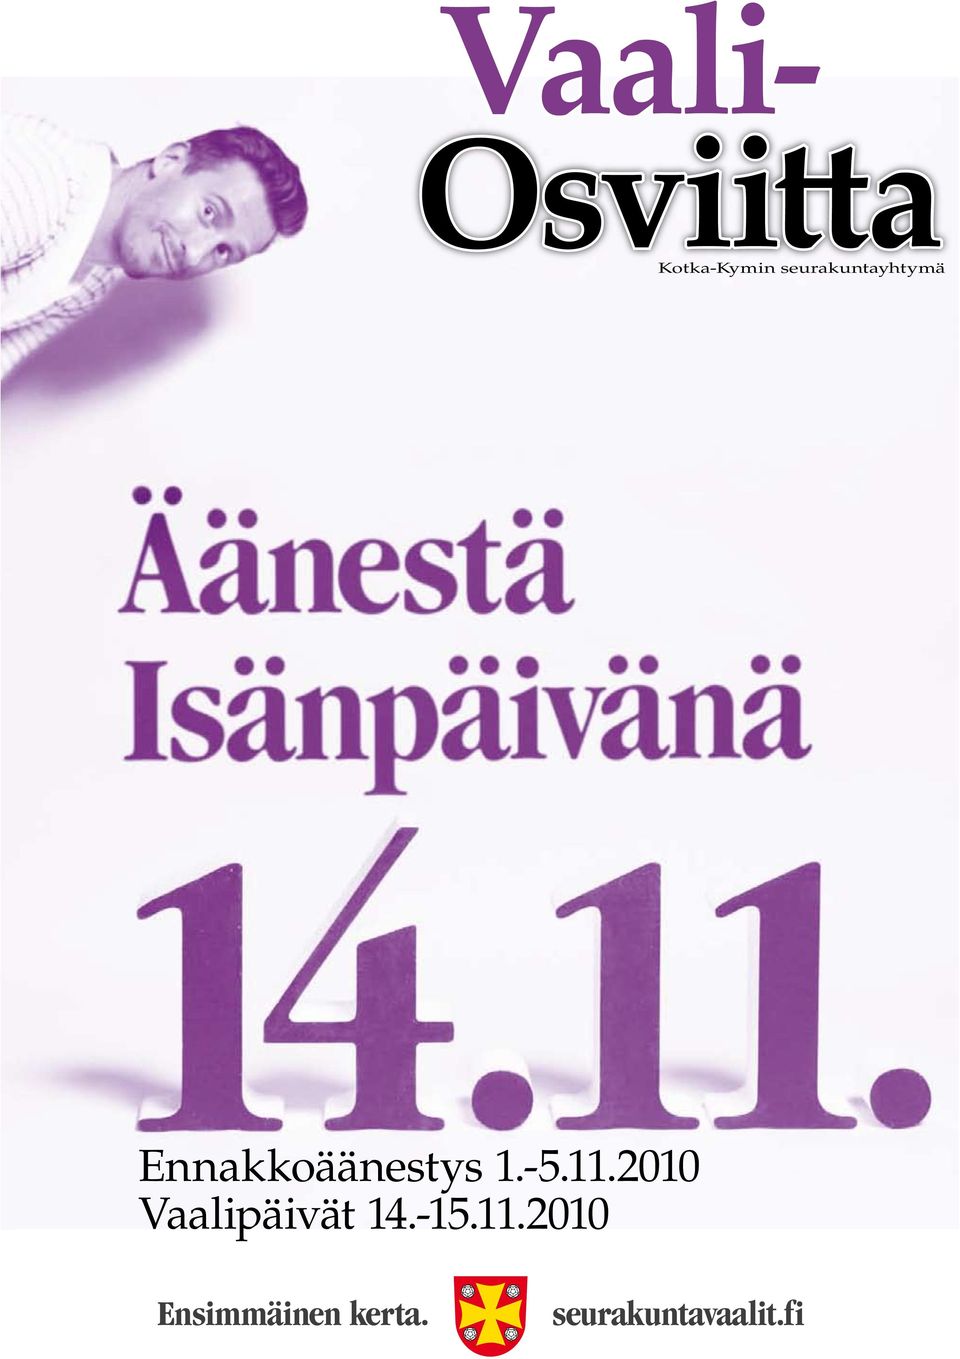 -5.11.2010 Vaalipäivät 14.-15.11.2010 Ensimmäinen kerta.